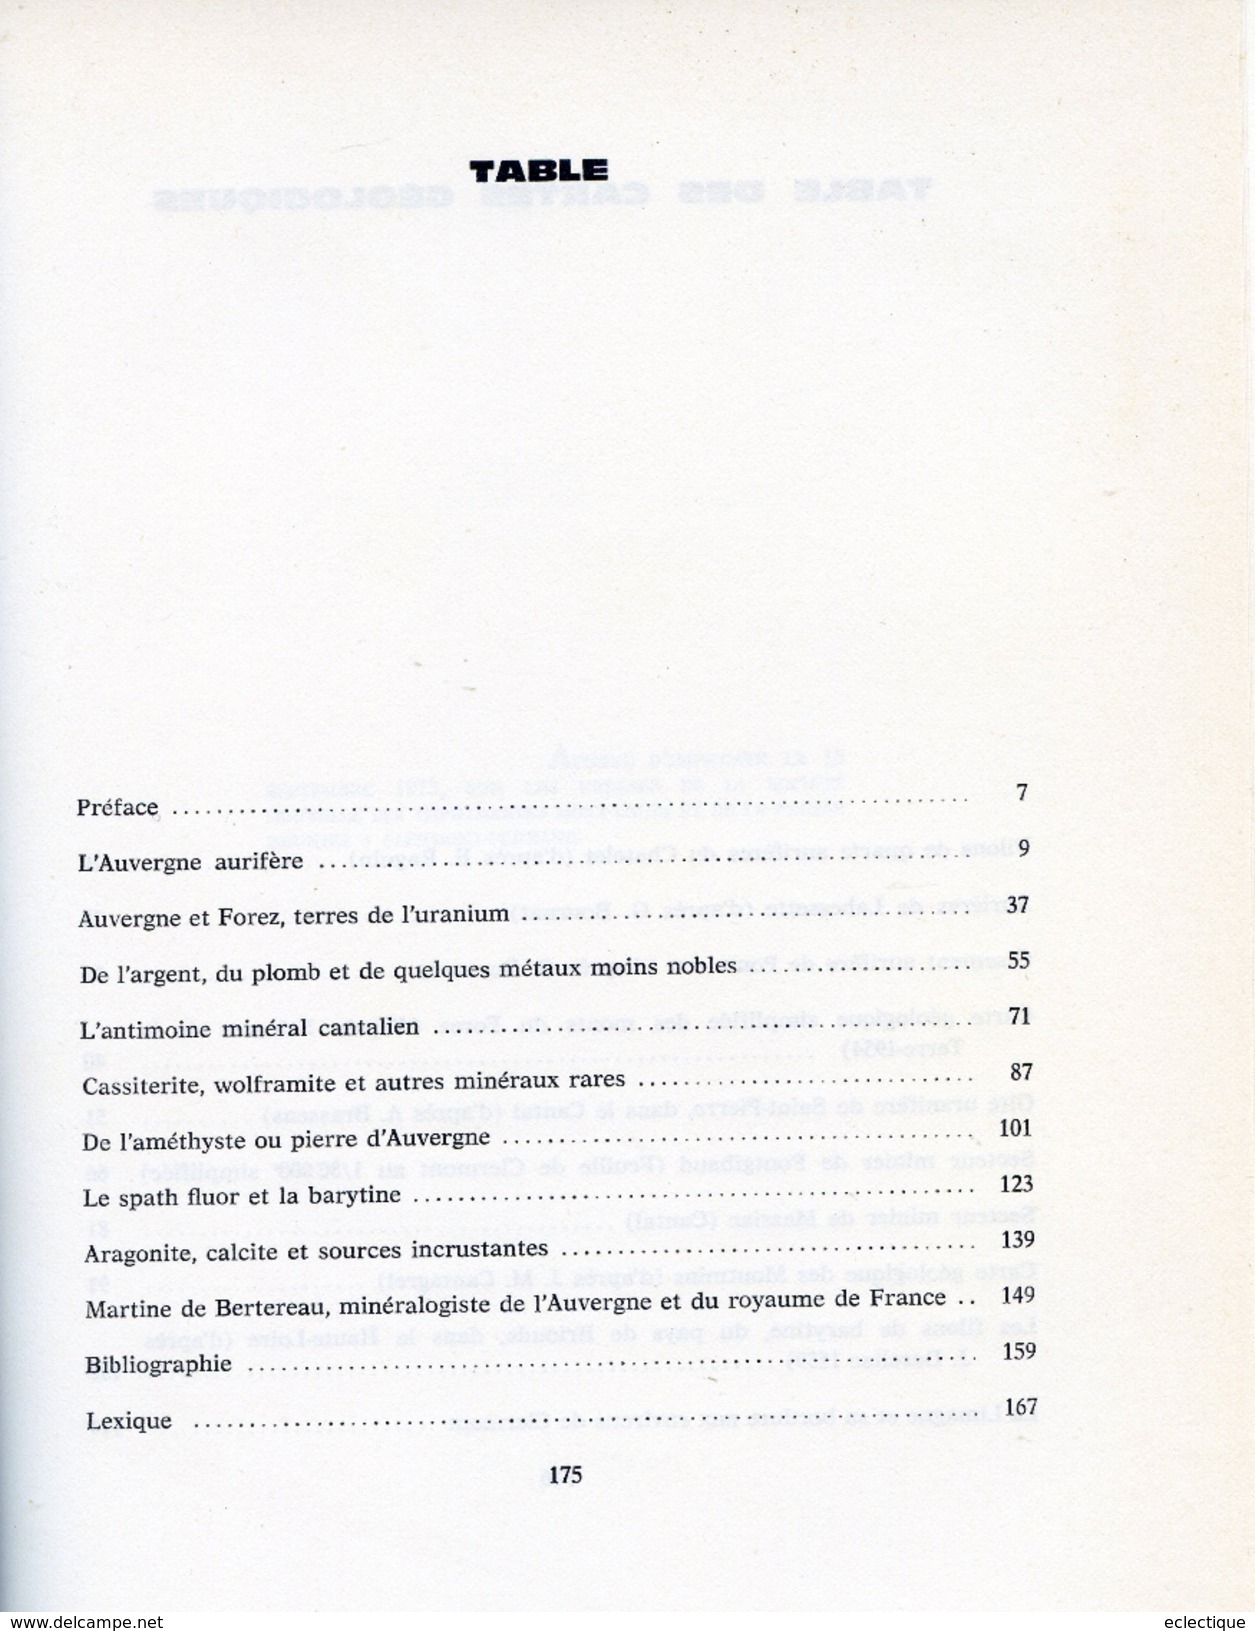 Richesses Minéralogiques De L'Auvergne,par Aimé RUDEL Editions Volcans, 1966 - Auvergne